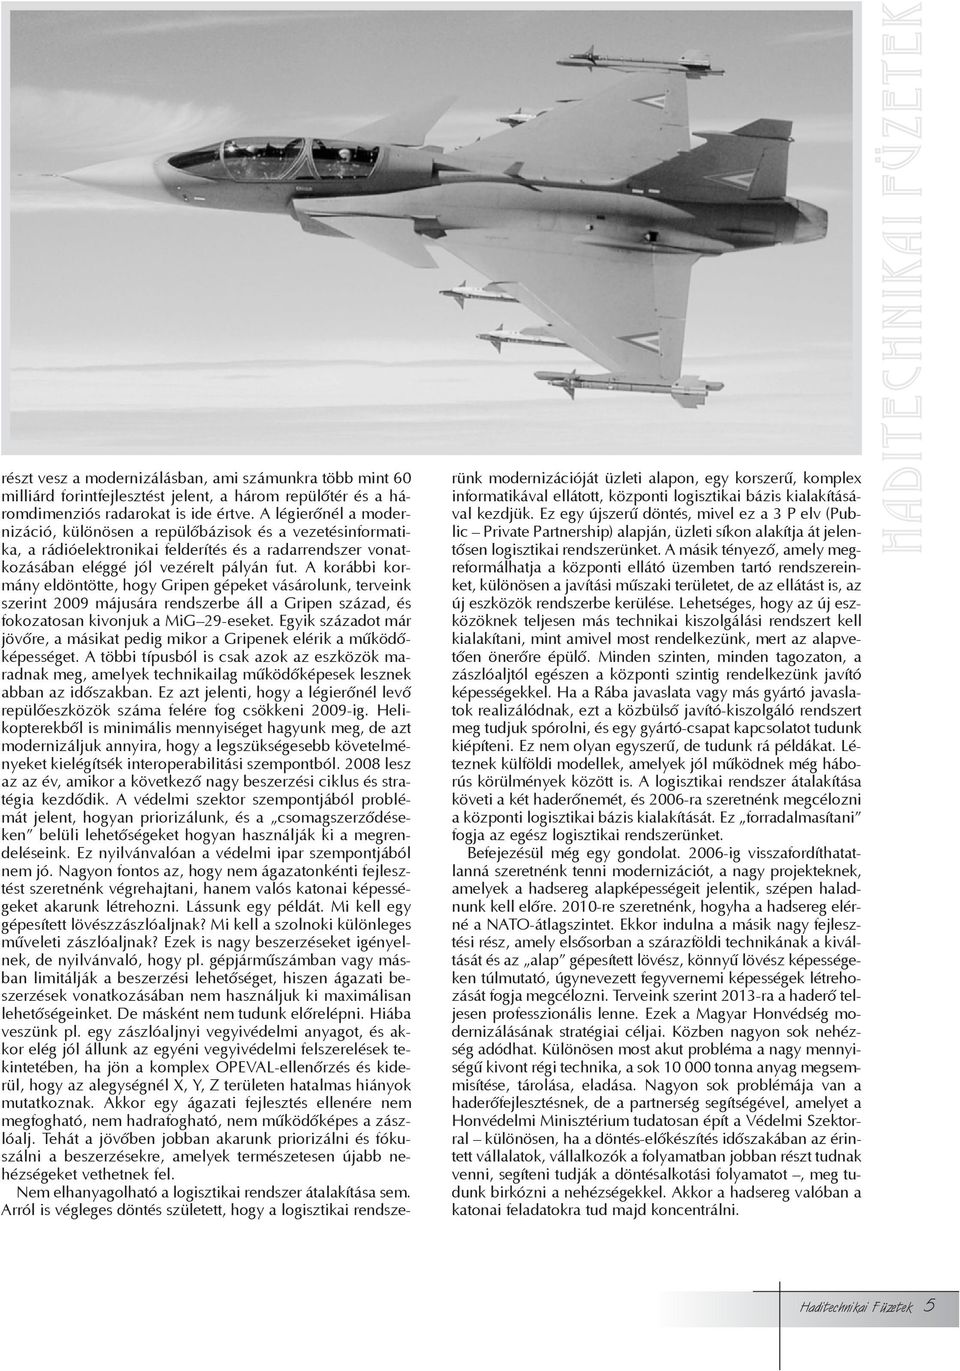 A korábbi kormány eldöntötte, hogy Gripen gépeket vásárolunk, terveink szerint 2009 májusára rendszerbe áll a Gripen század, és fokozatosan kivonjuk a MiG 29-eseket.